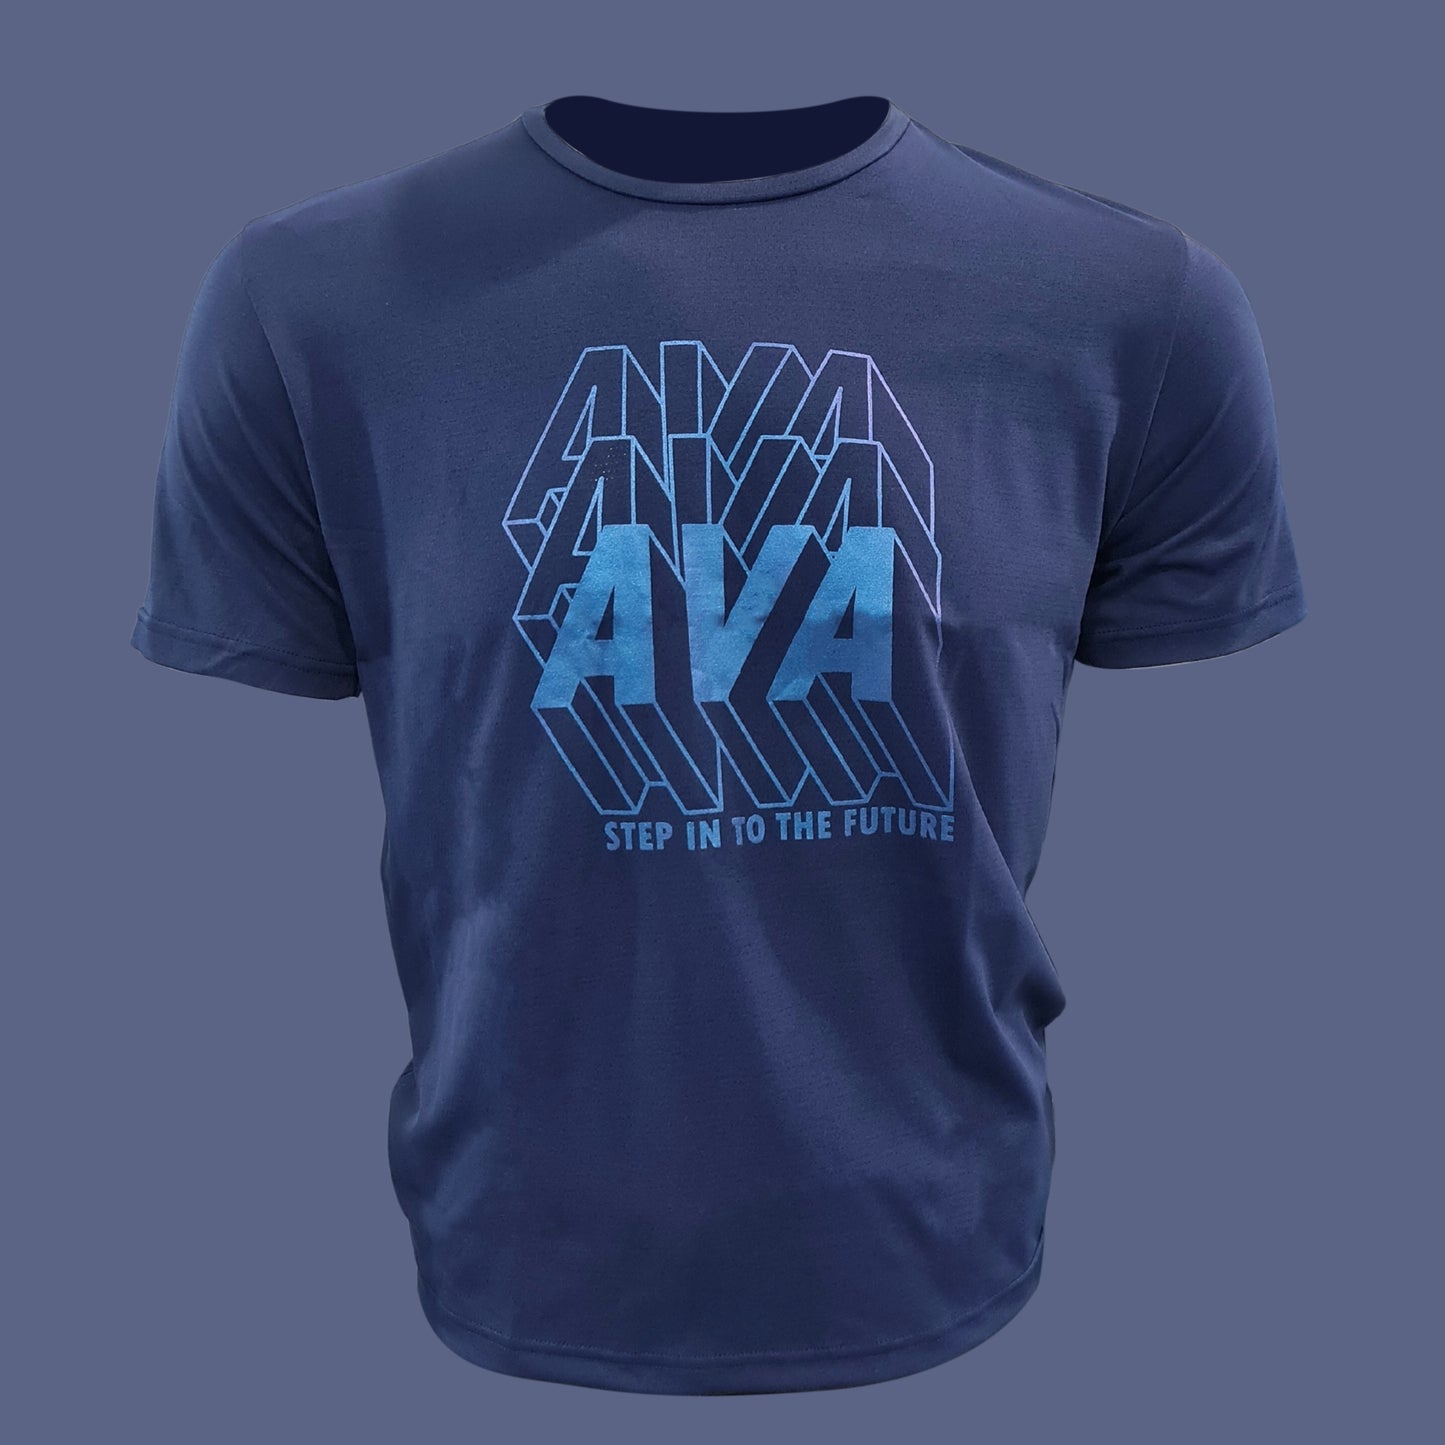 AVIVA Men's Minimalist Short Sleeve Tee (91-8082)